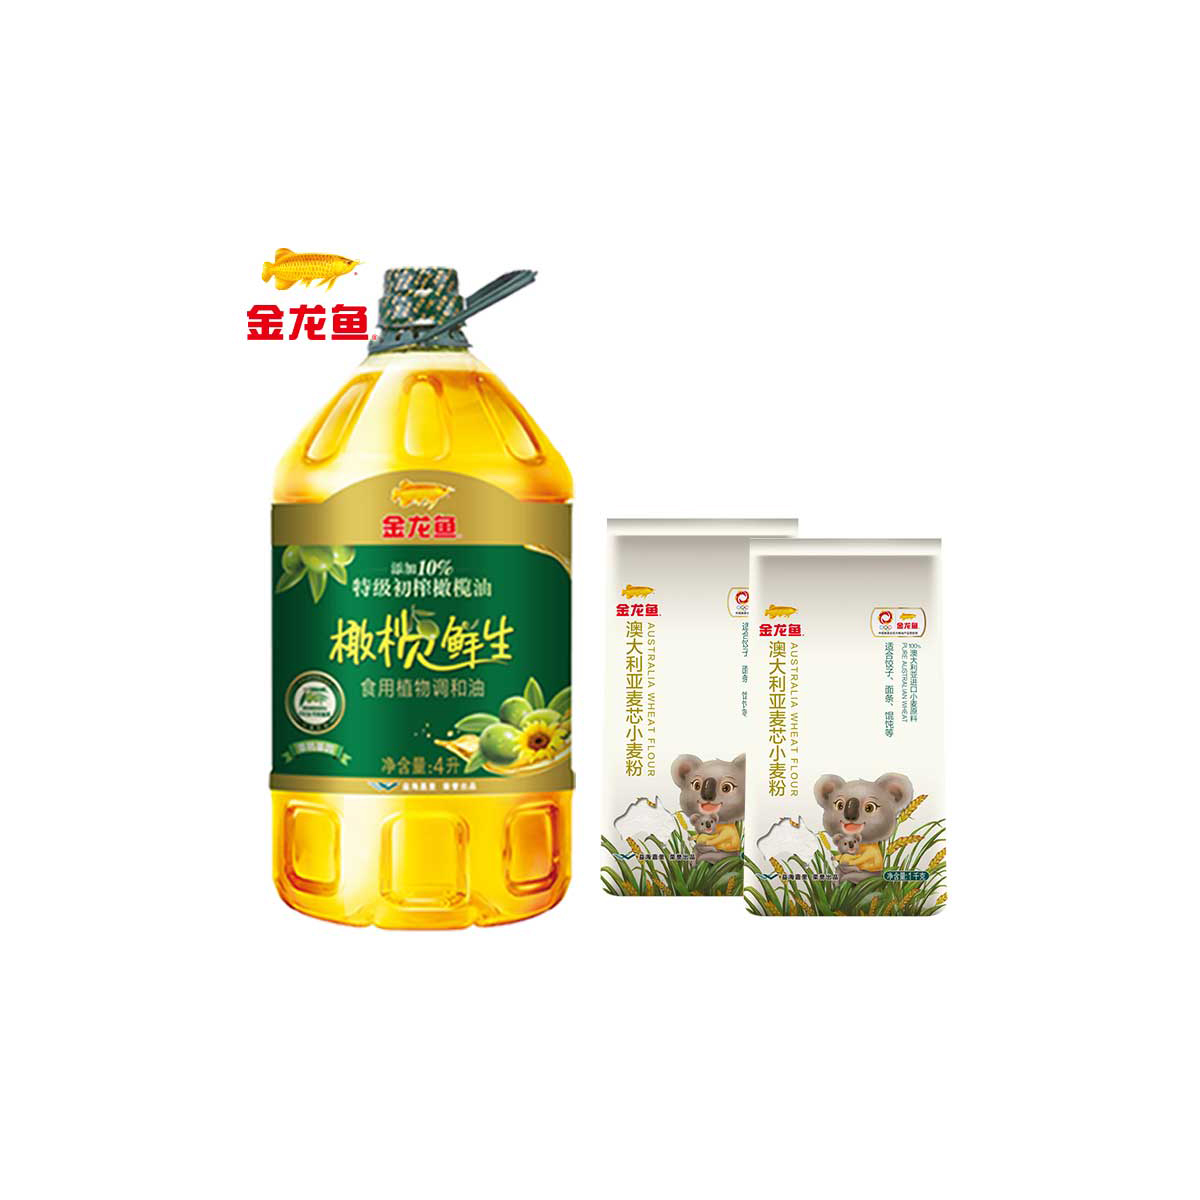 金龙鱼 纯正/浓香 花生油 玉米油 5升 Arowana Peanut/ Corn Oil 5L | Shopee Malaysia